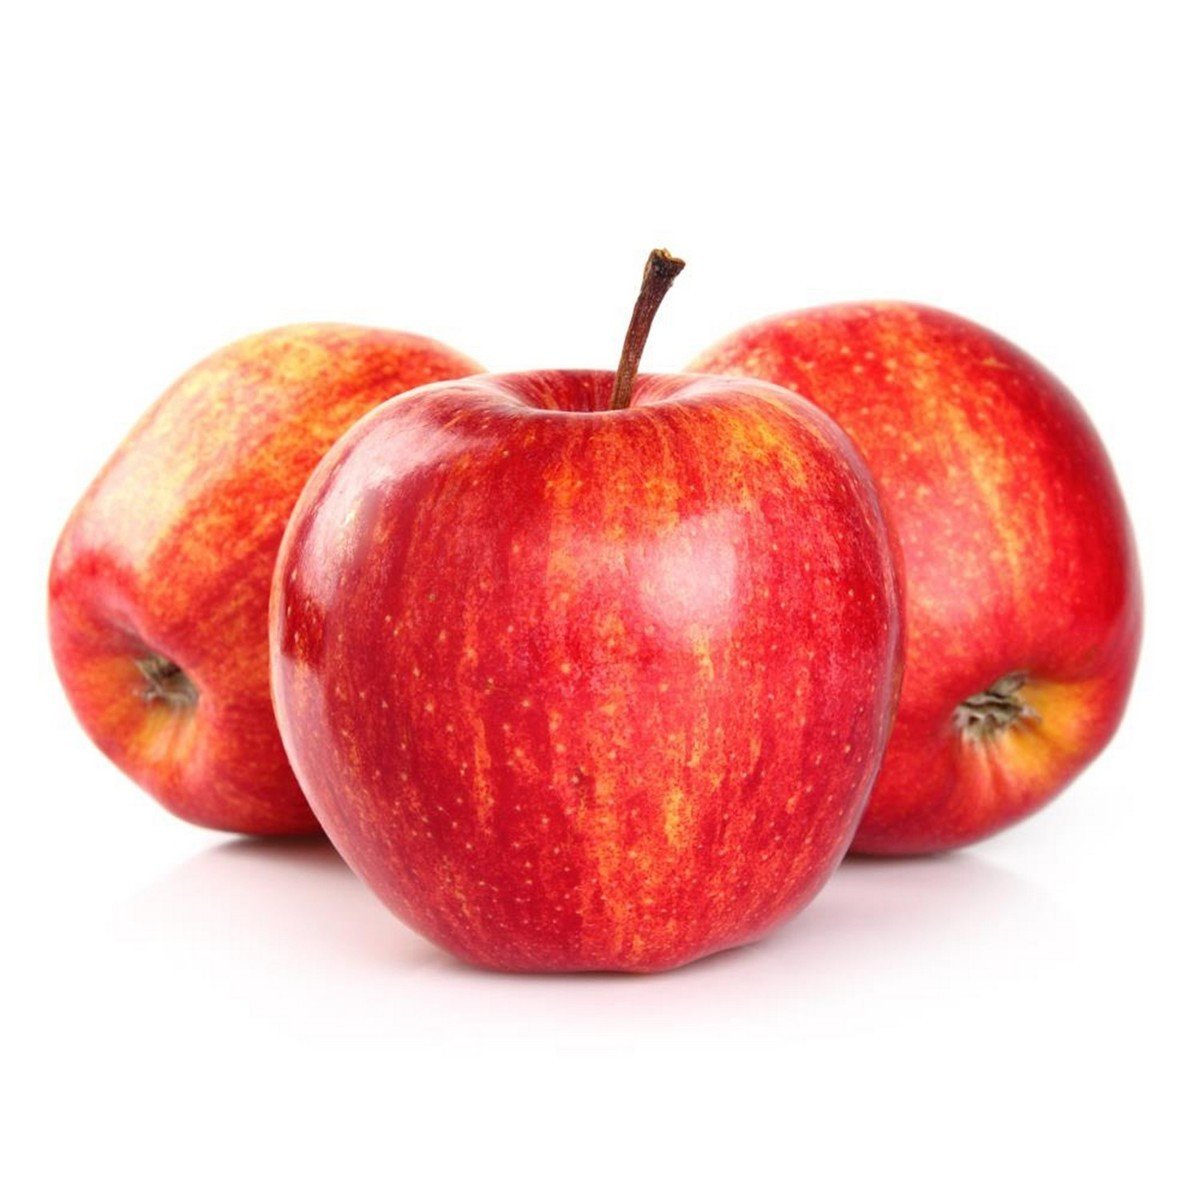 اشتري قم بشراء تفاح رويال جالا جنوب أفريقي 1 كجم Online at Best Price من الموقع - من لولو هايبر ماركت Apples في السعودية